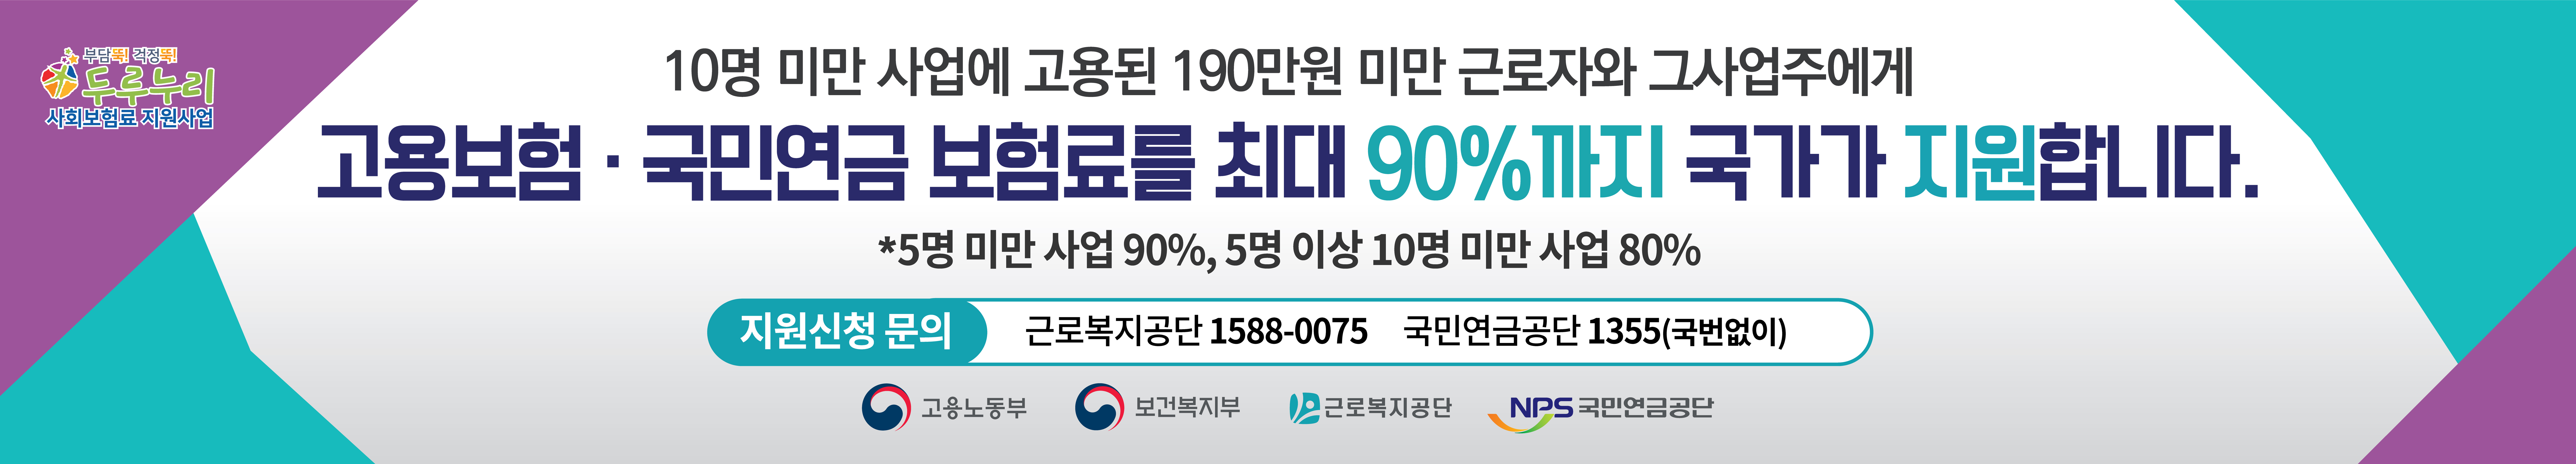 두루누리 사회보험료 지원사업 홍보 현수막 (1)